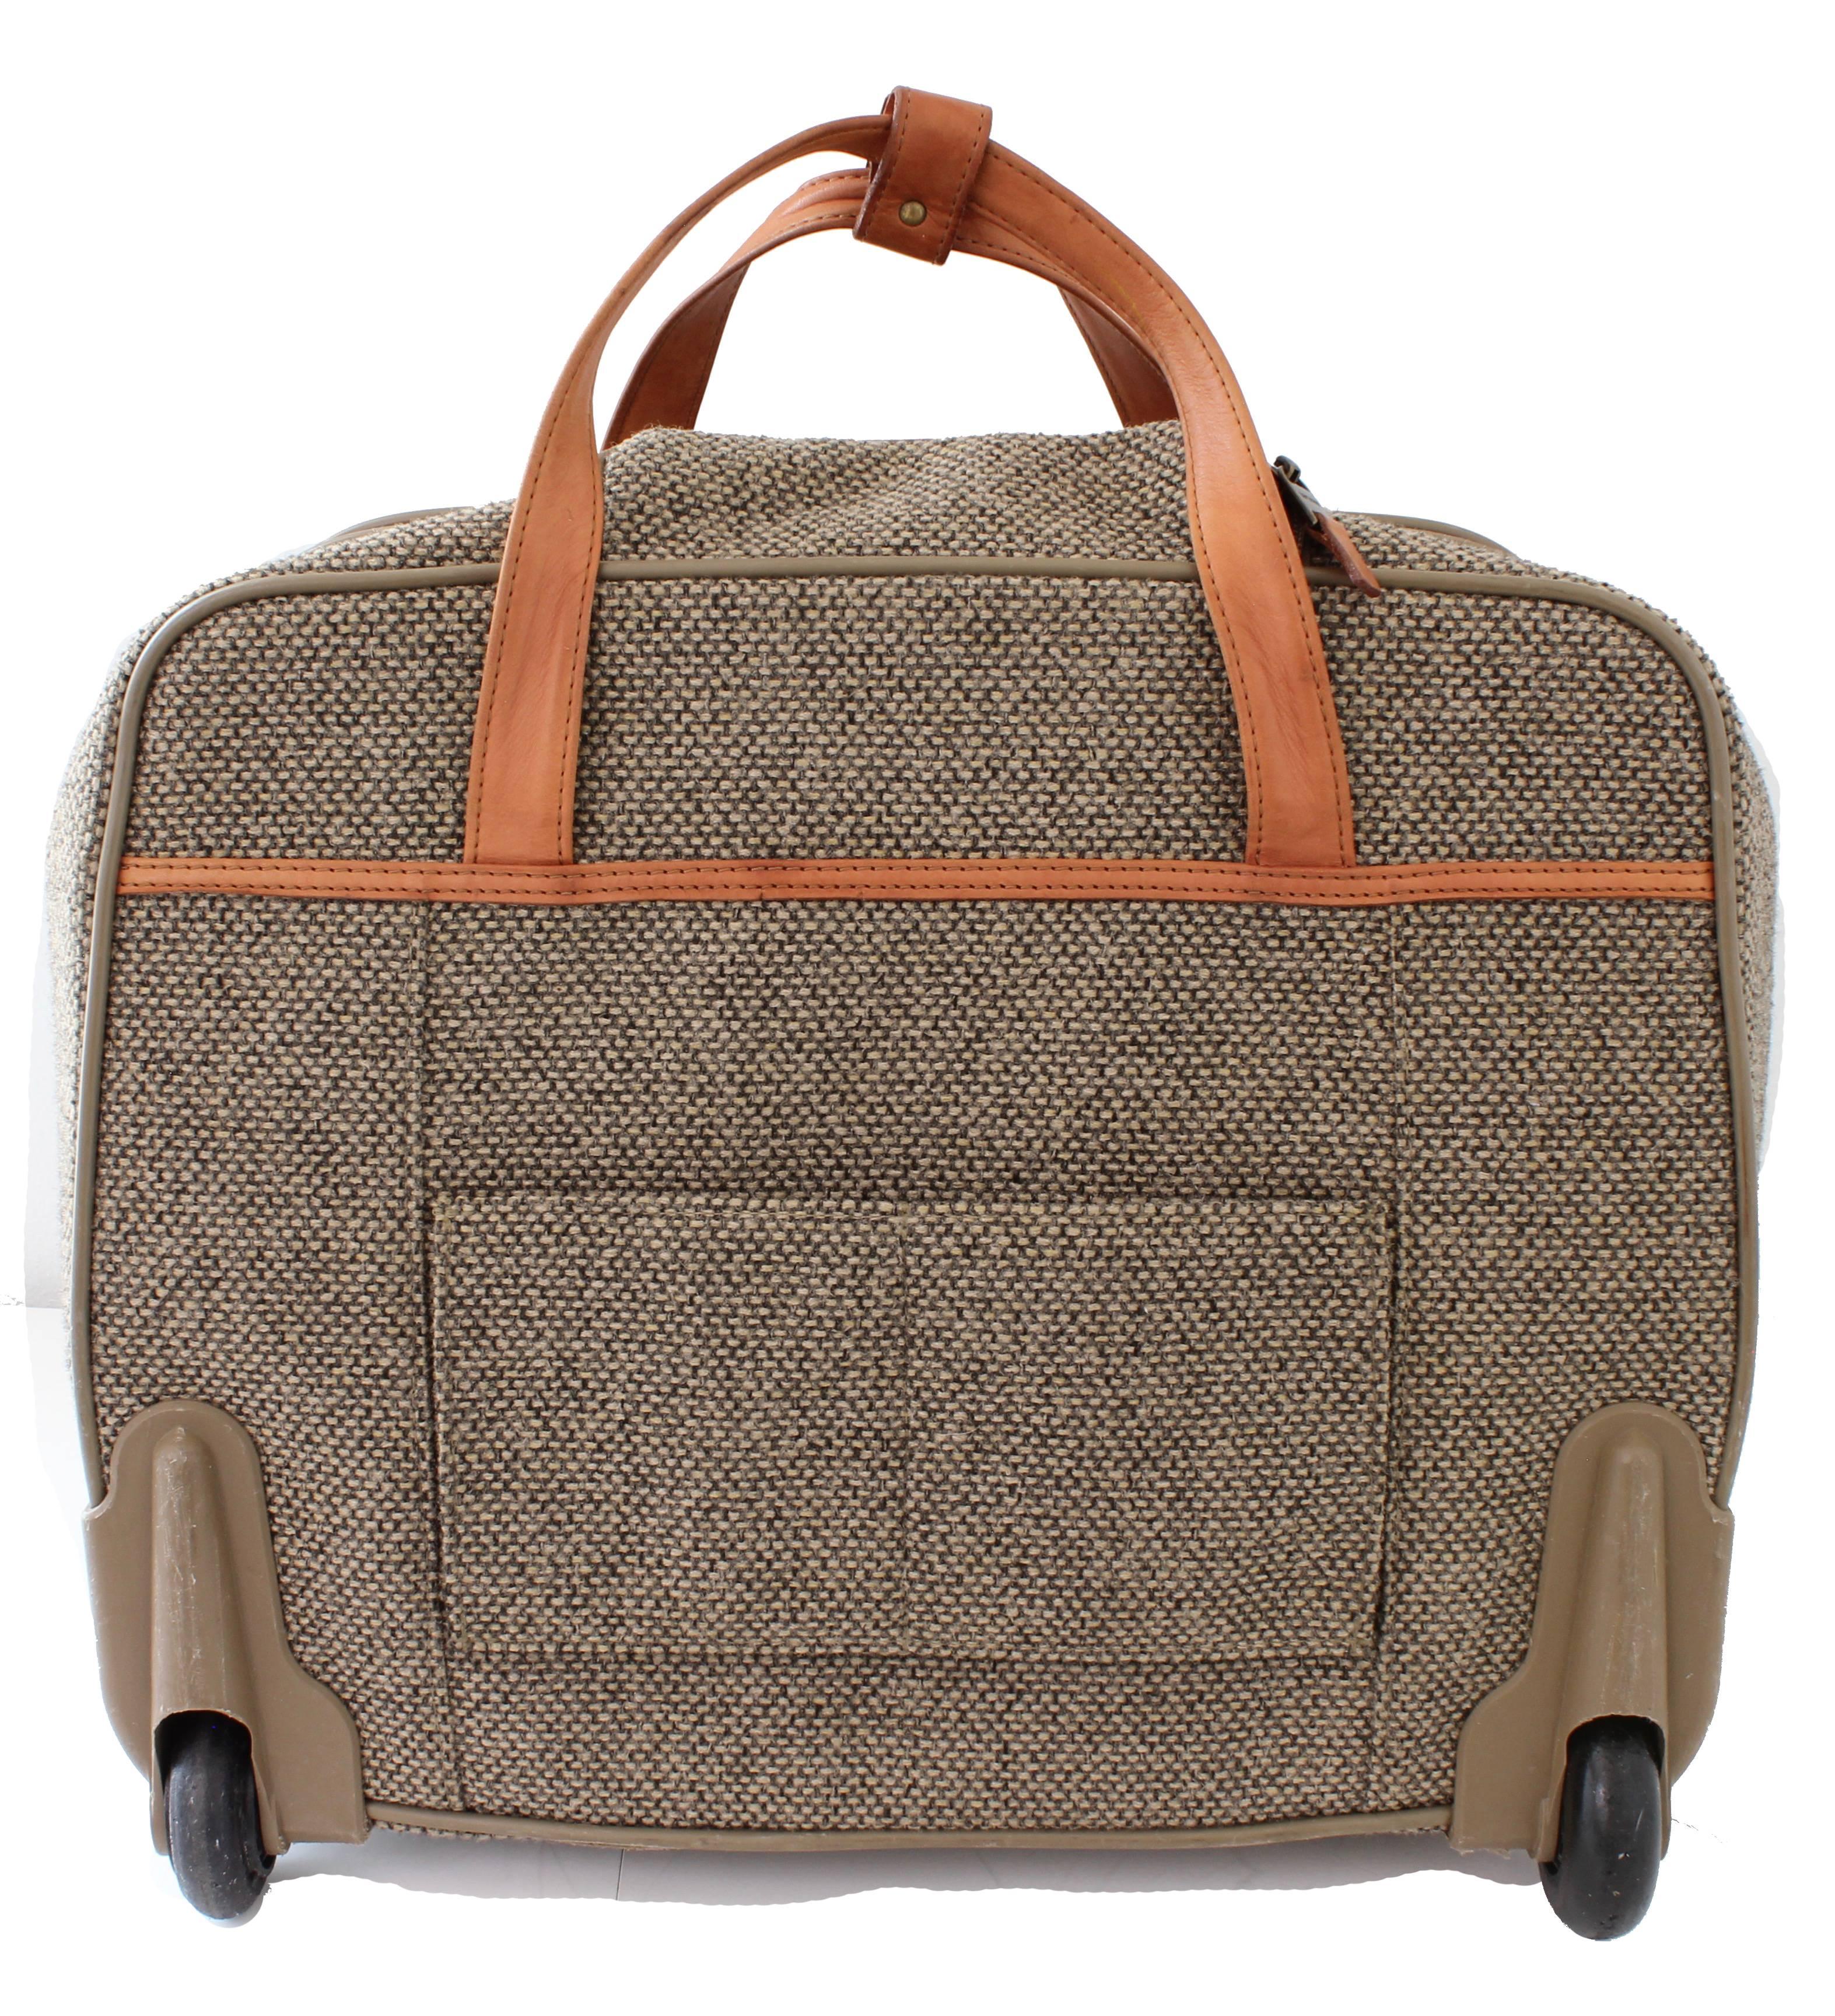 hartmann tweed luggage vintage